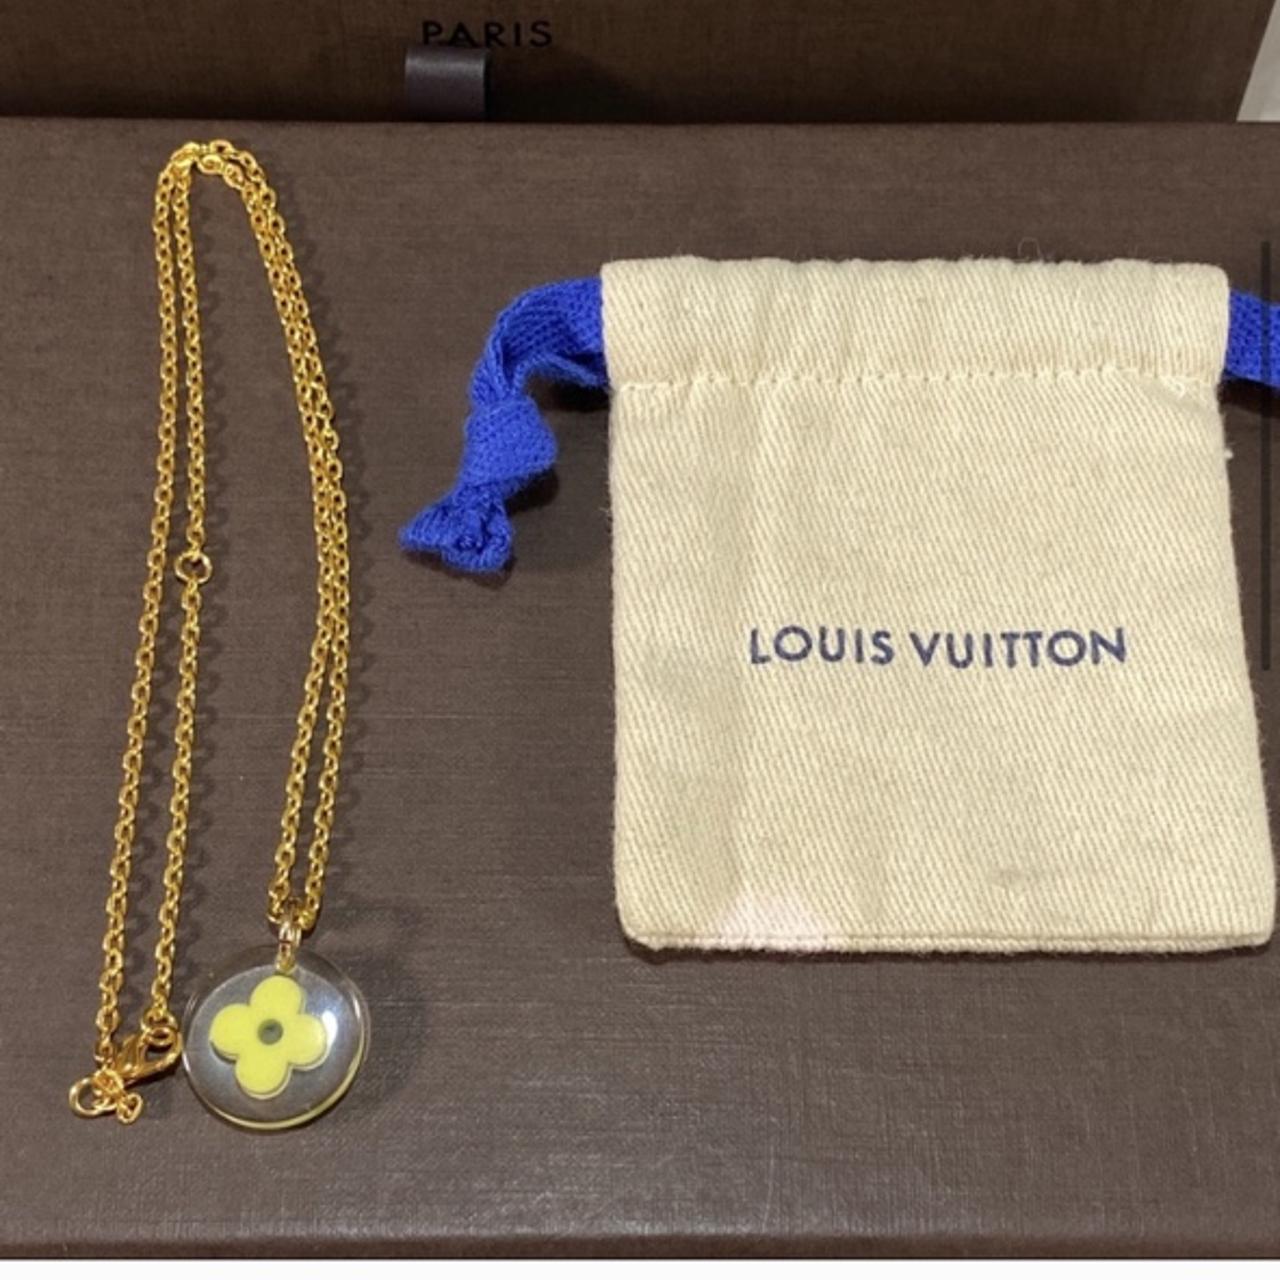 Authentic Louis Vuitton Monogram Charms Cabas - Depop